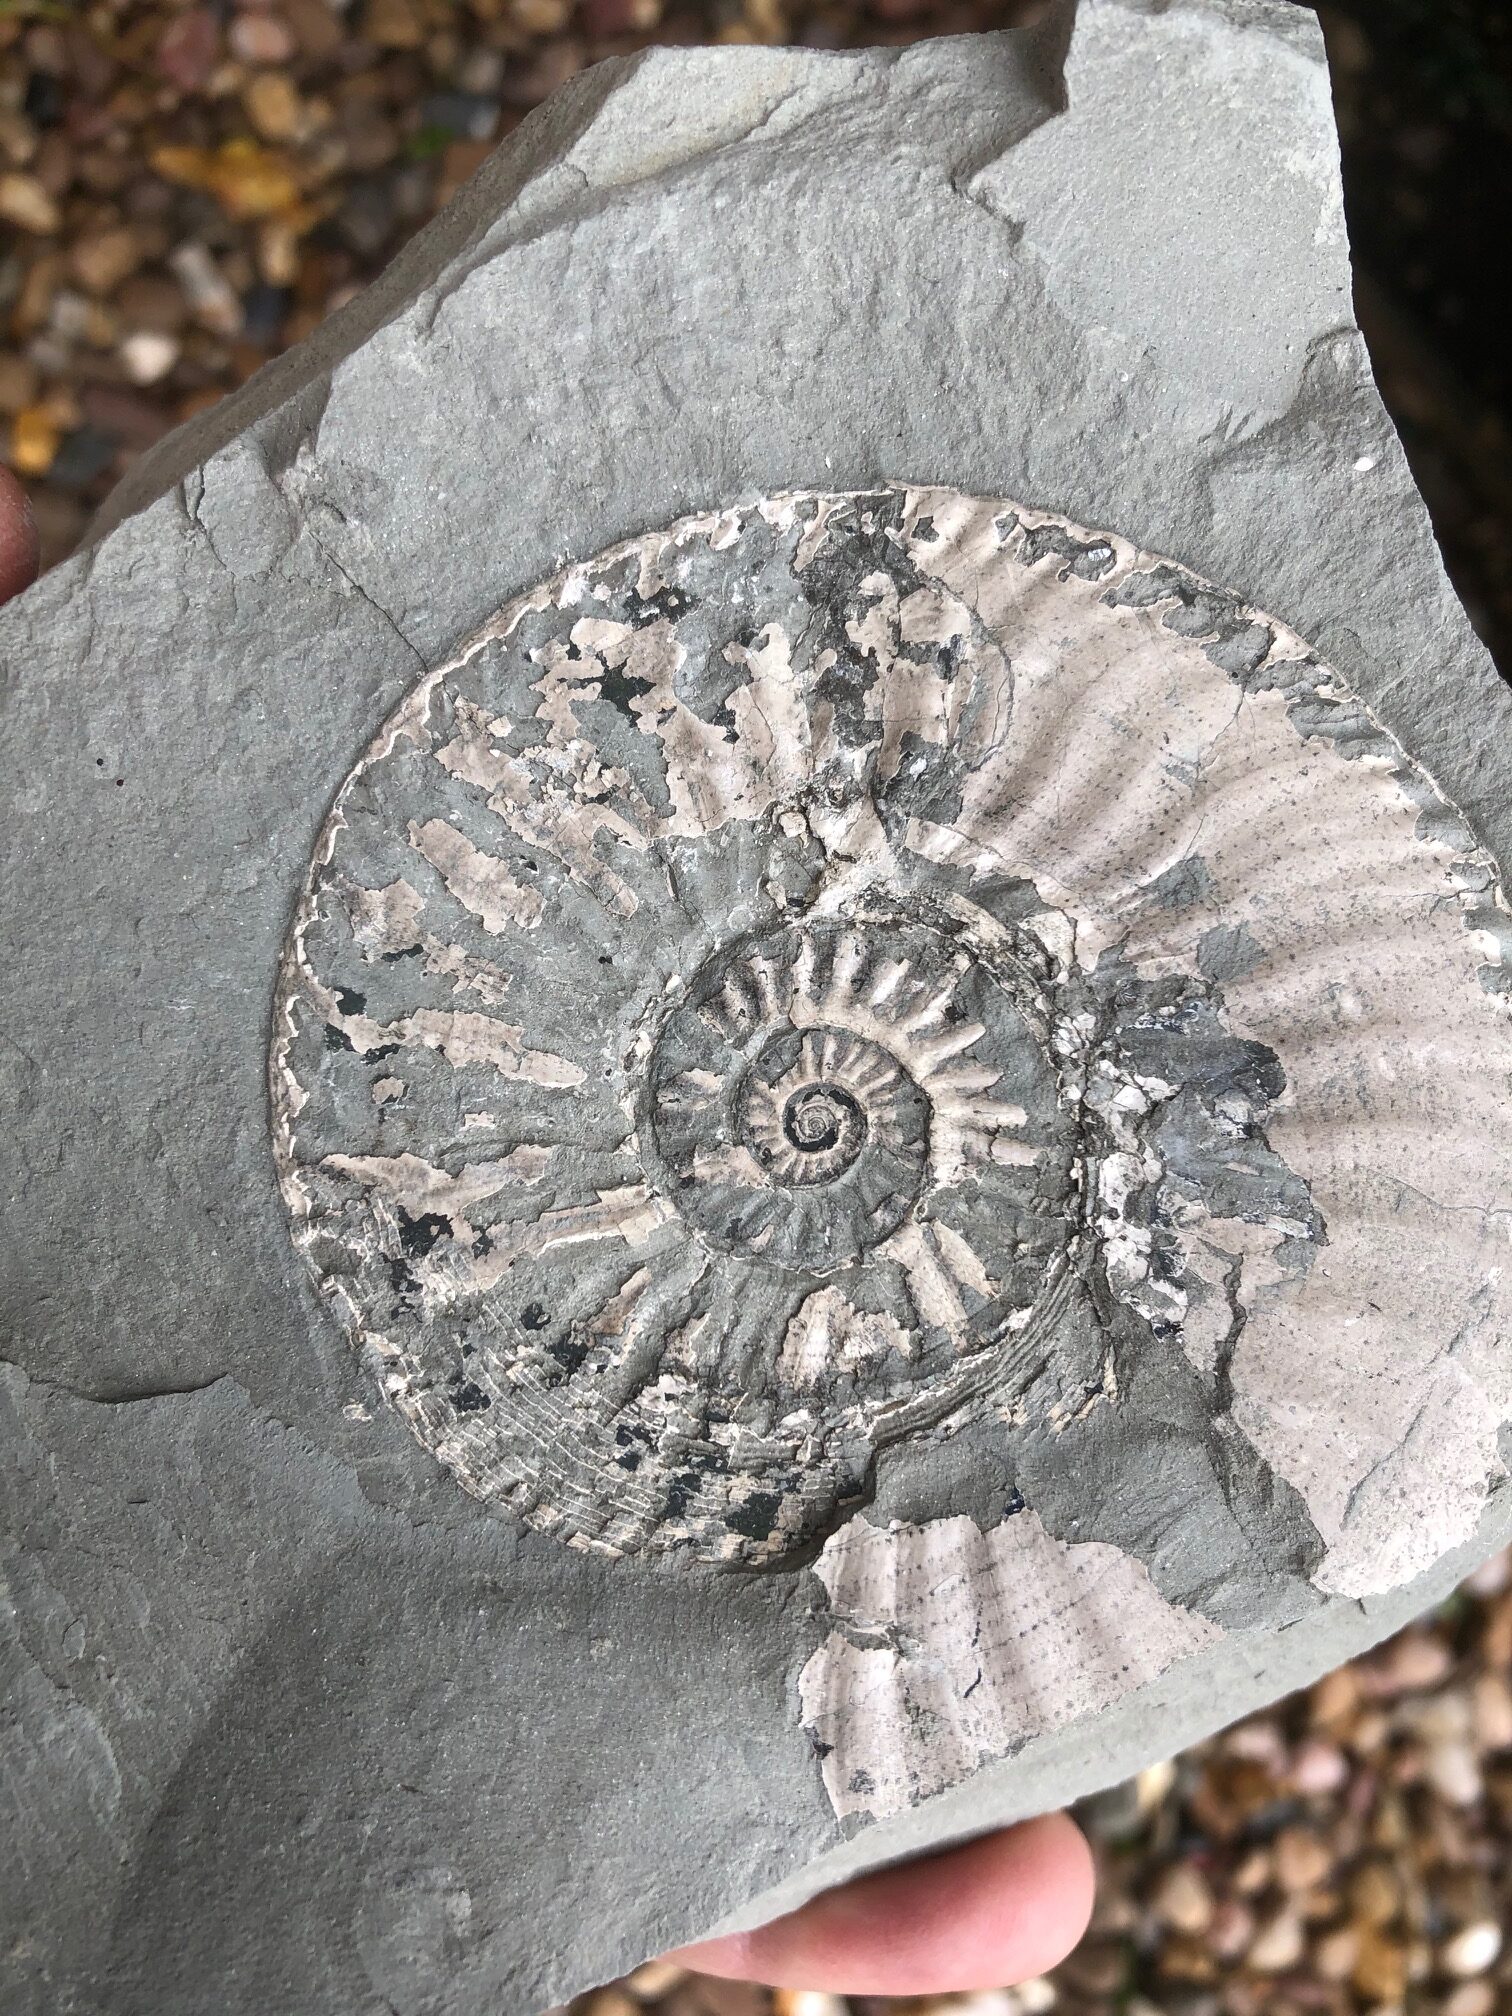 Ammonite fossil in rock